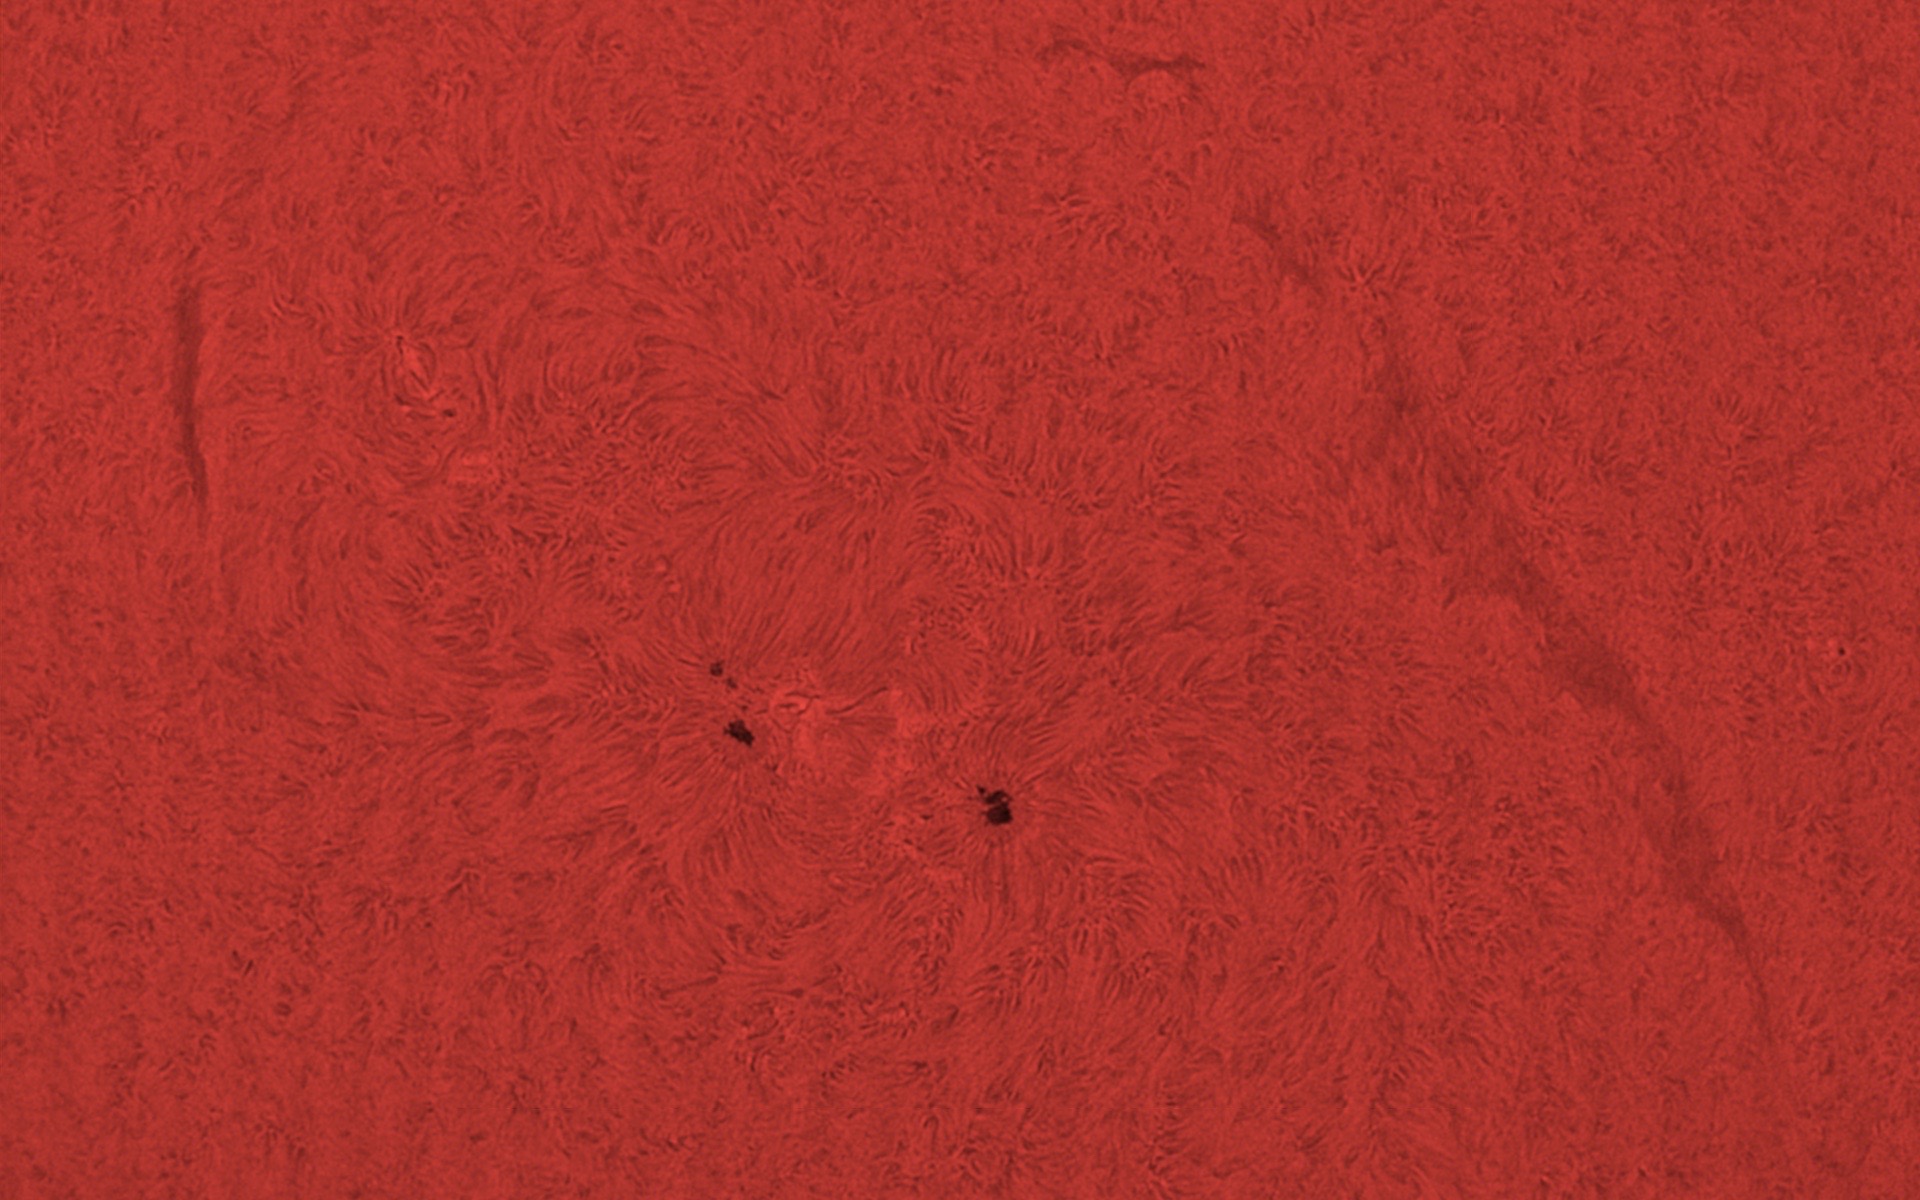 Sonnenfleckengruppe im H-alpha Licht am 06.09.2016